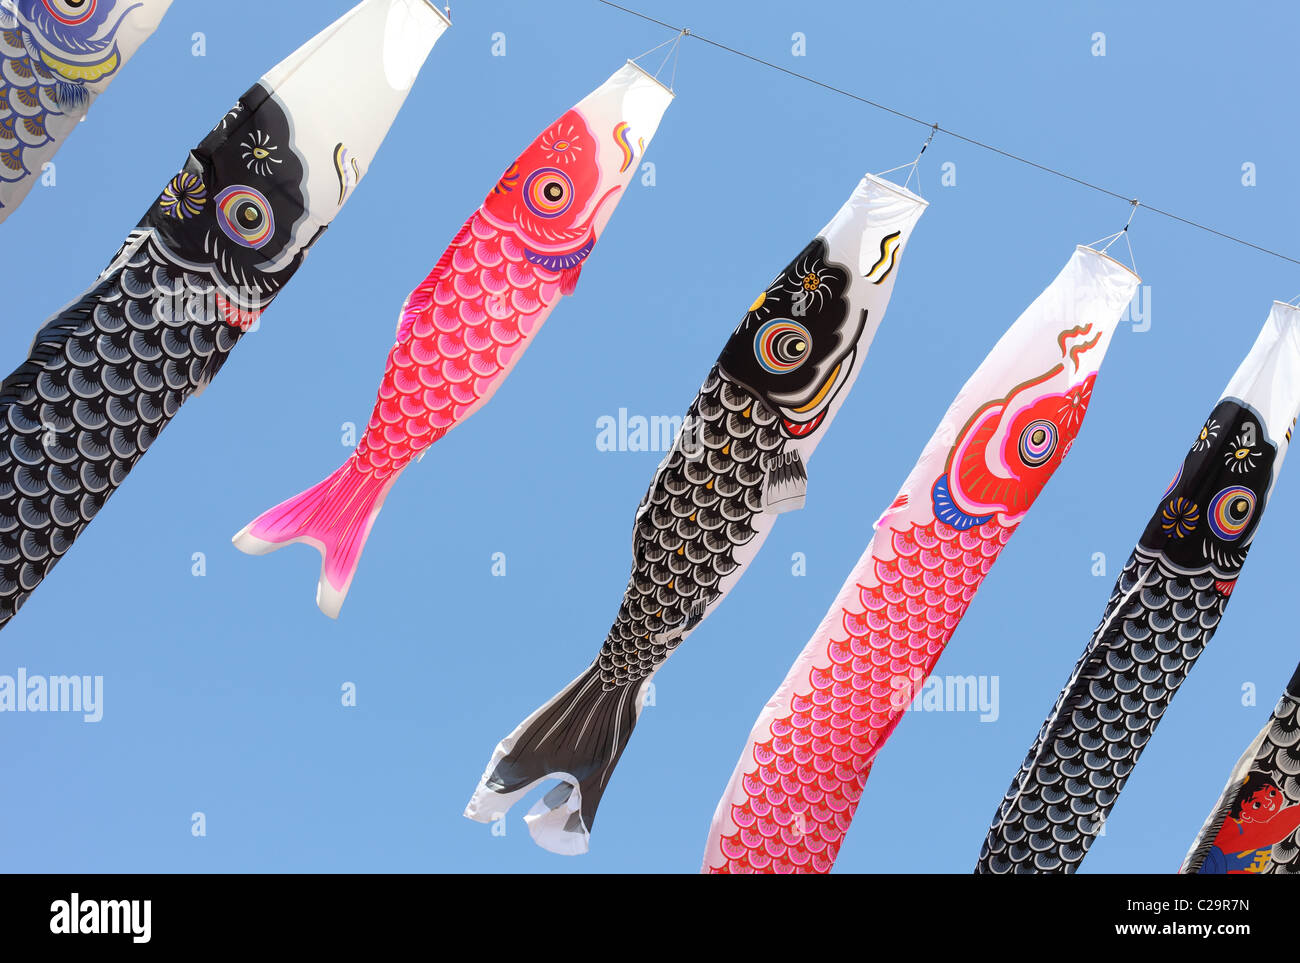 Japanese kites immagini e fotografie stock ad alta risoluzione - Alamy